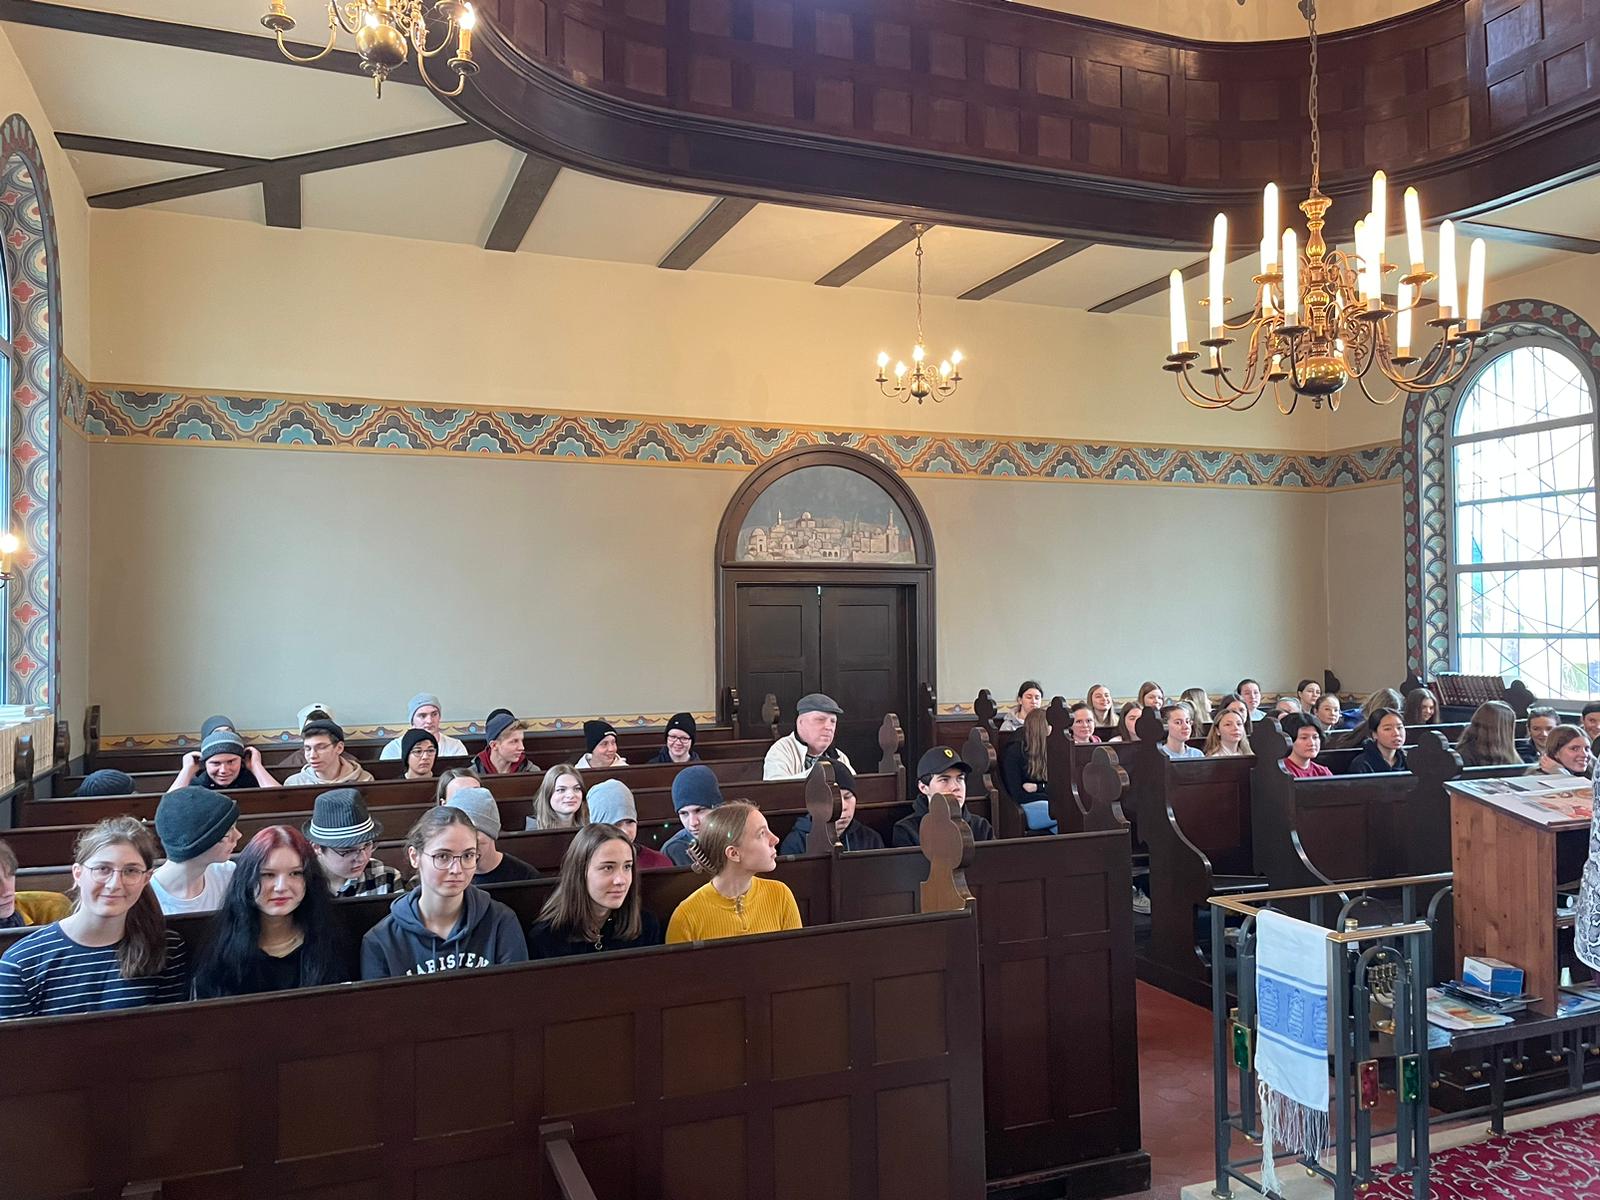 Viel Wissenswertes über den jüdischen Glauben erfuhren die Schülerinnen und Schüler der 9. Jahrgangsstufe beim Besuch der Synagoge in Straubing.